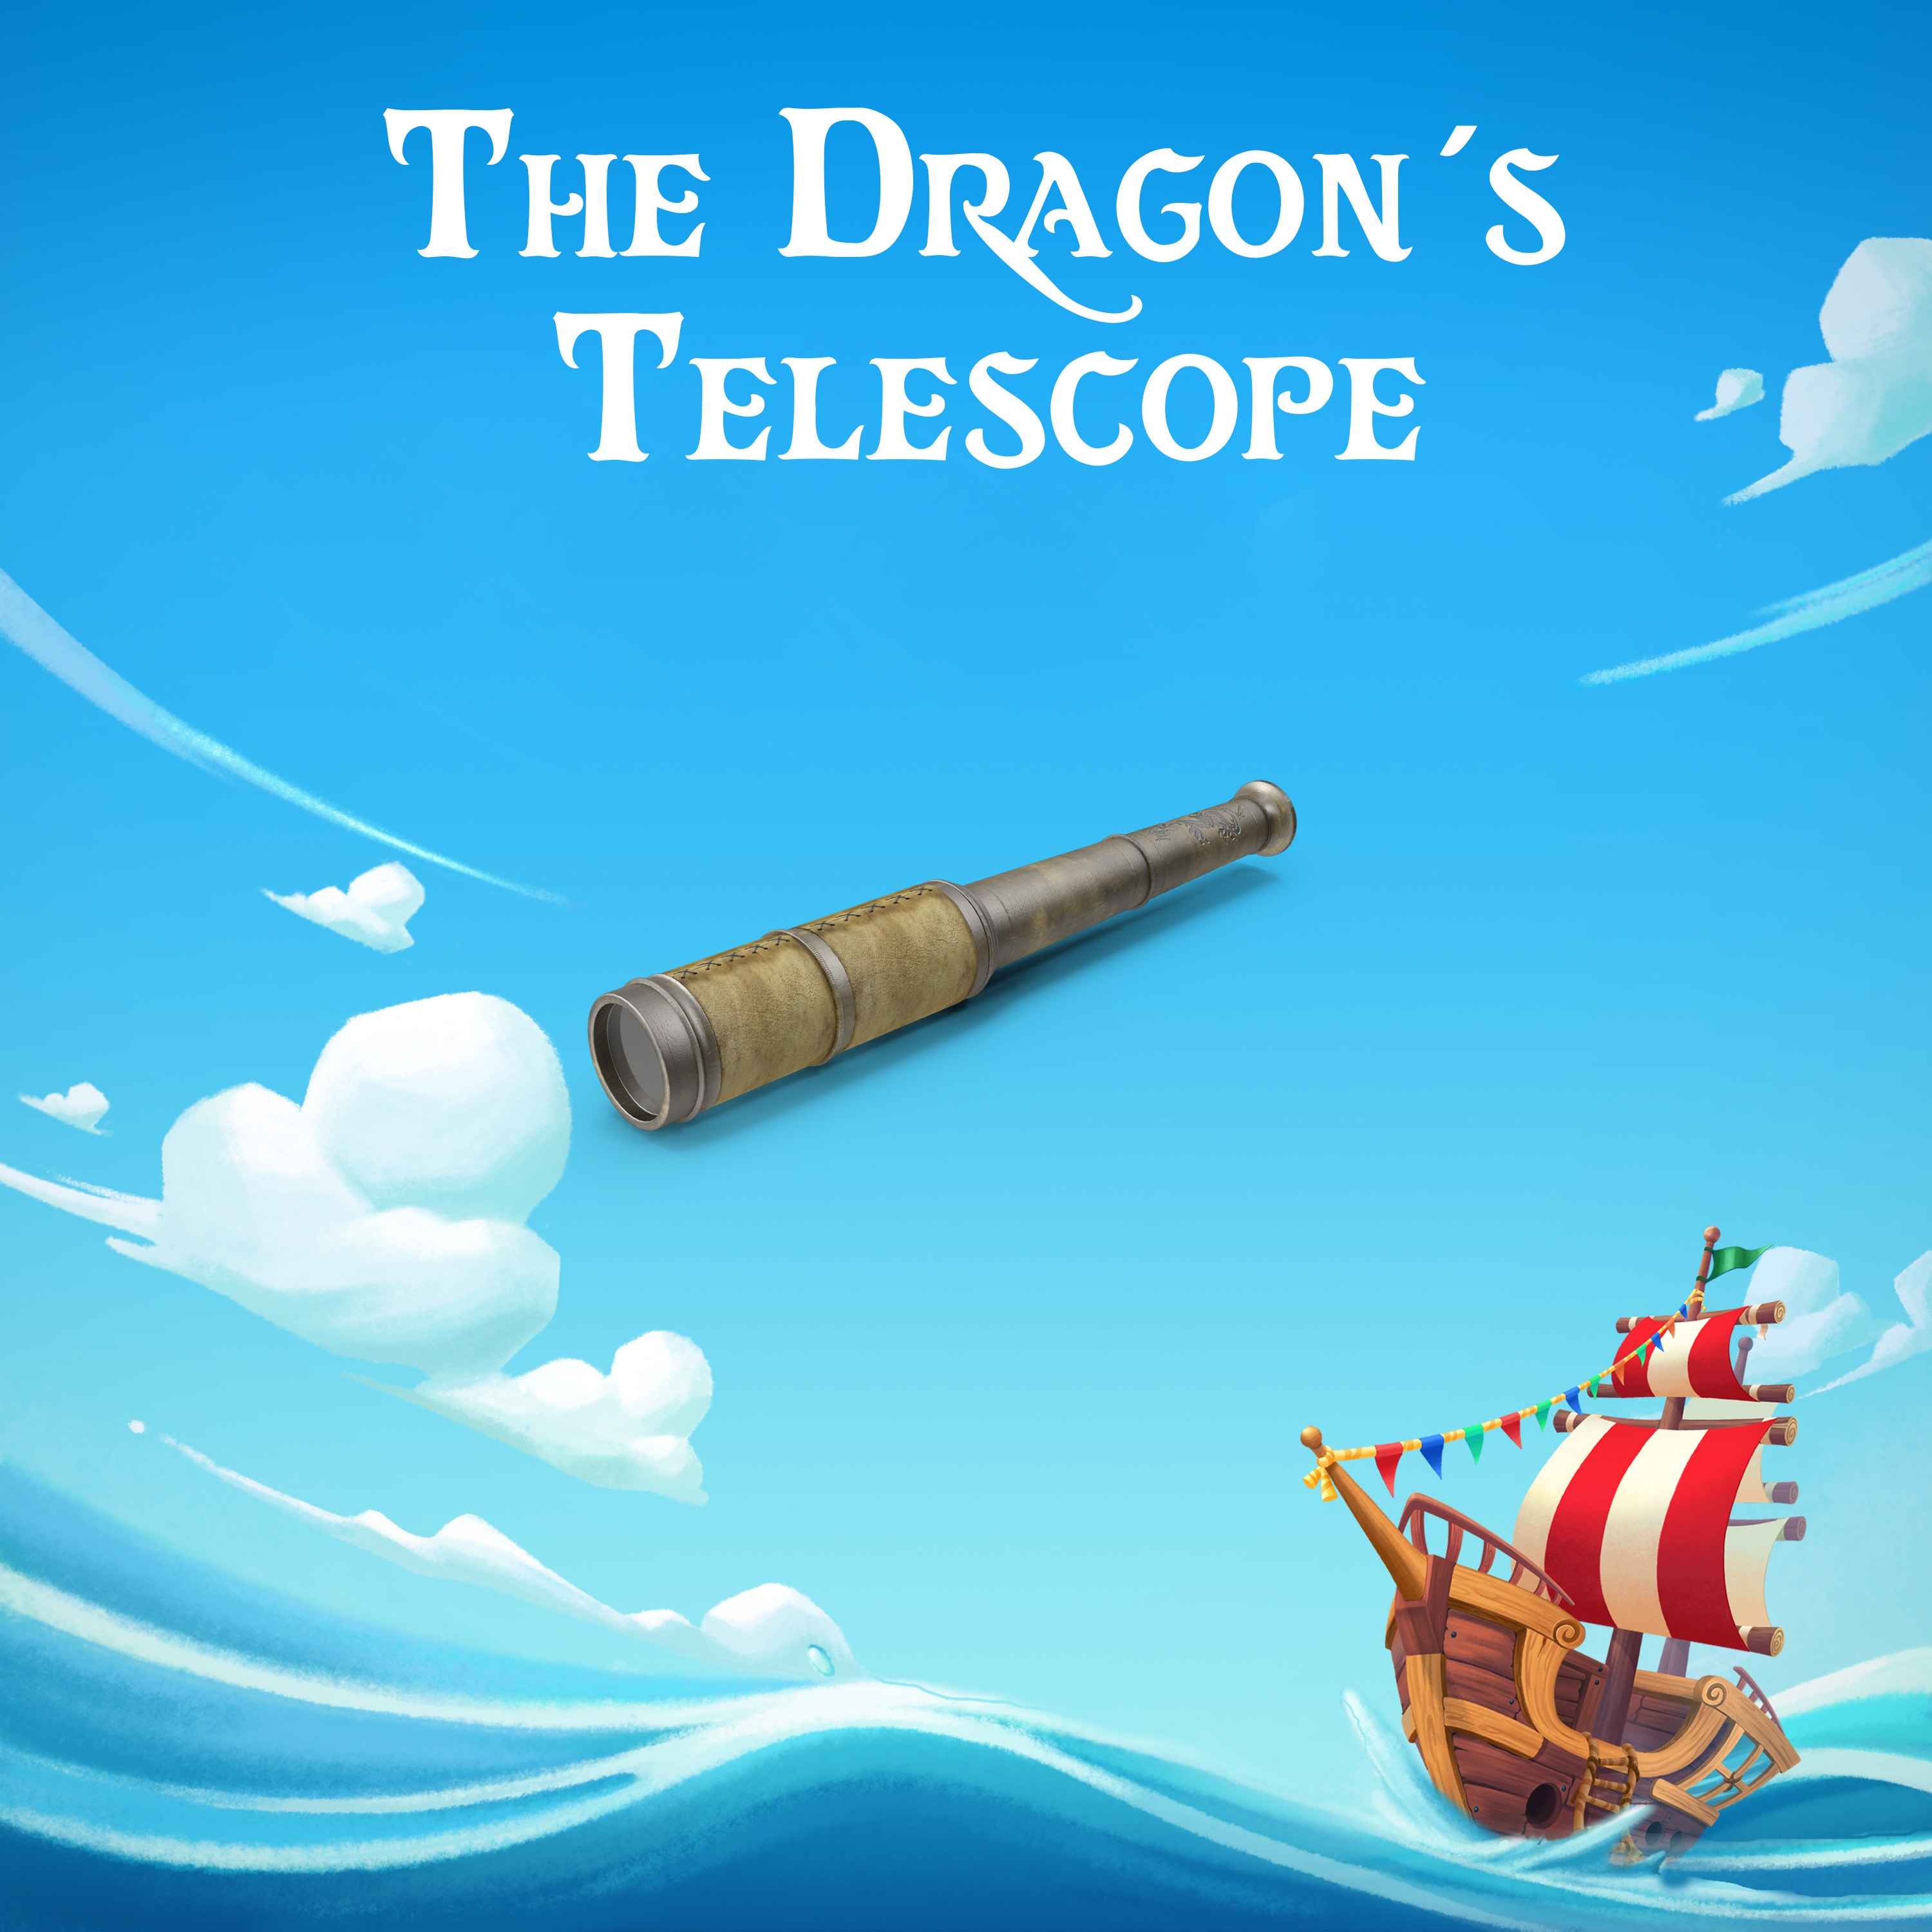 The Dragon’s Telescope